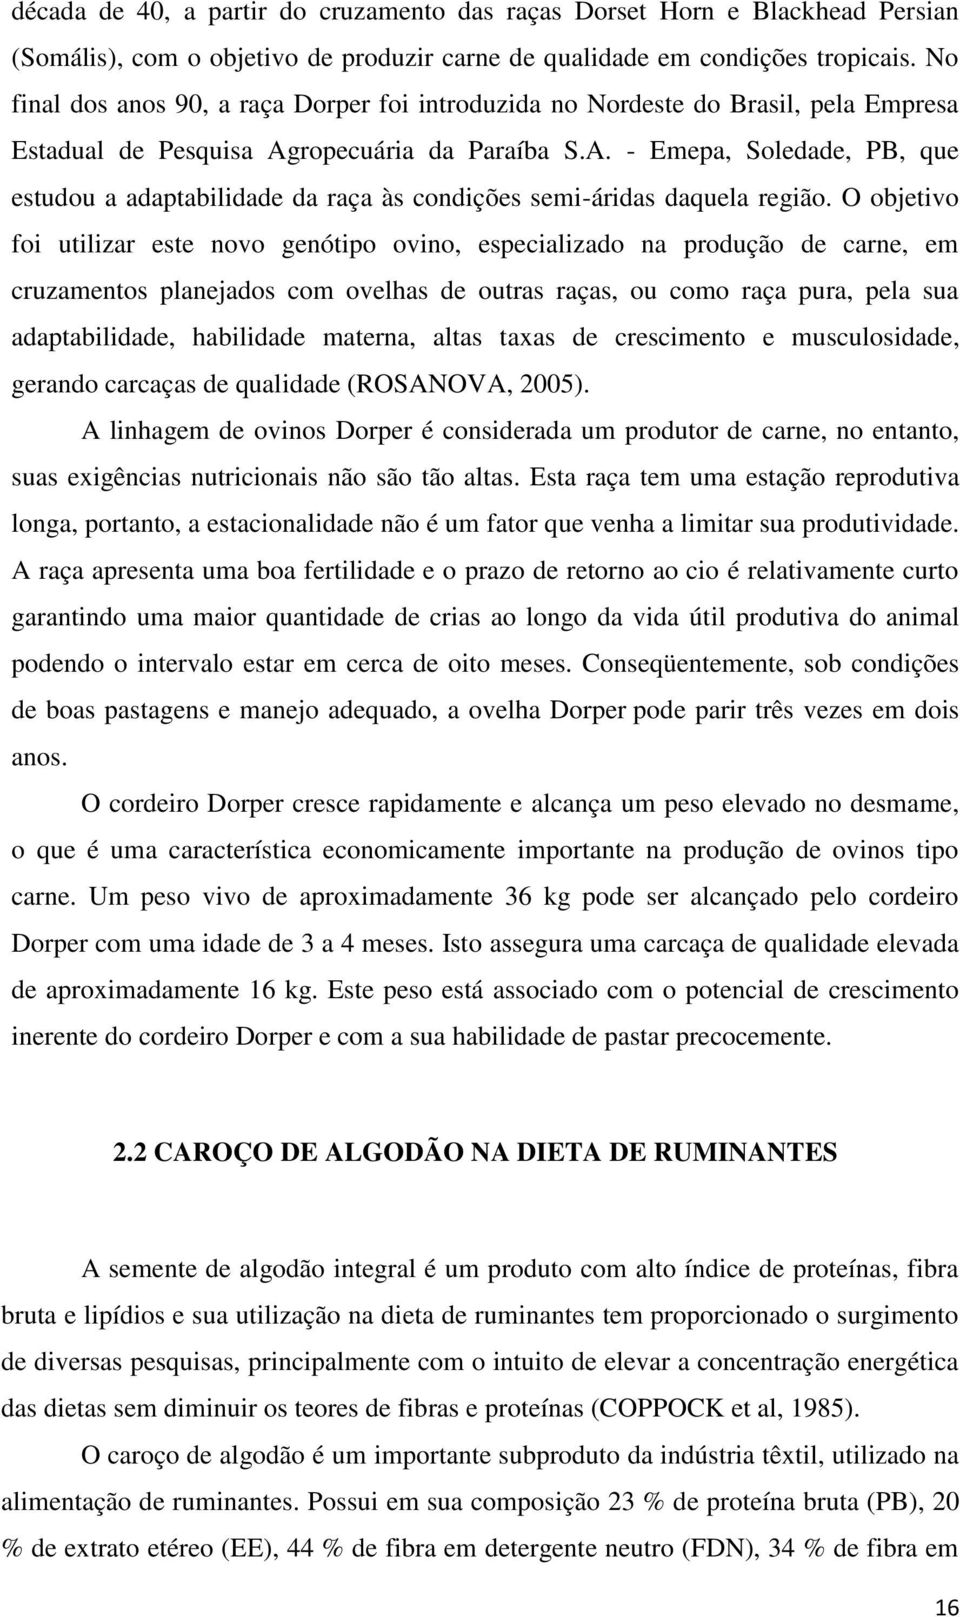 ropecuária da Paraíba S.A. - Emepa, Soledade, PB, que estudou a adaptabilidade da raça às condições semi-áridas daquela região.